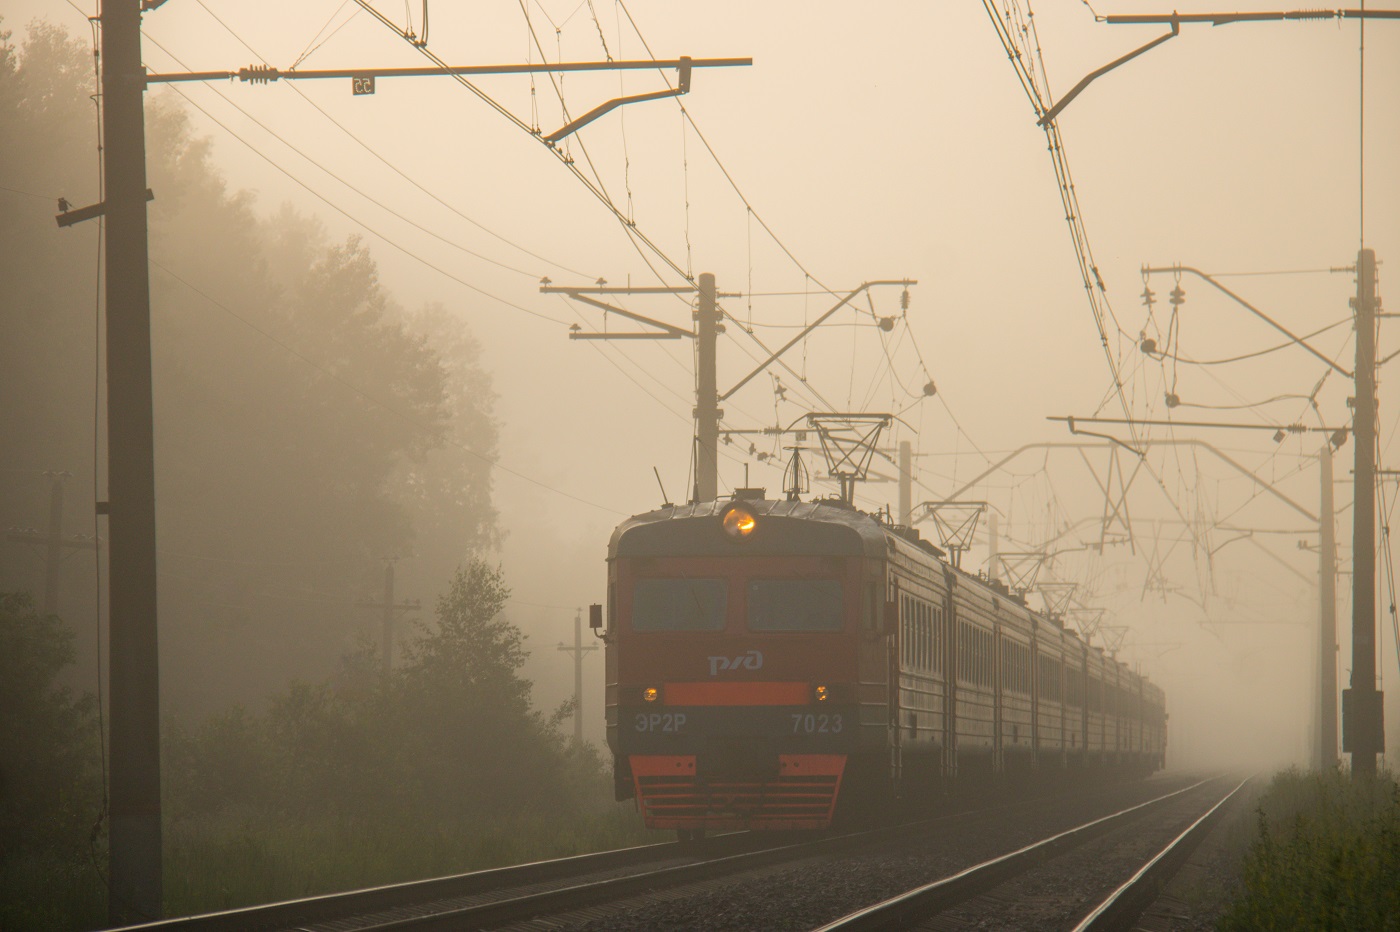 ЭР2Р-7023; Фотозарисовки (Московская железная дорога)